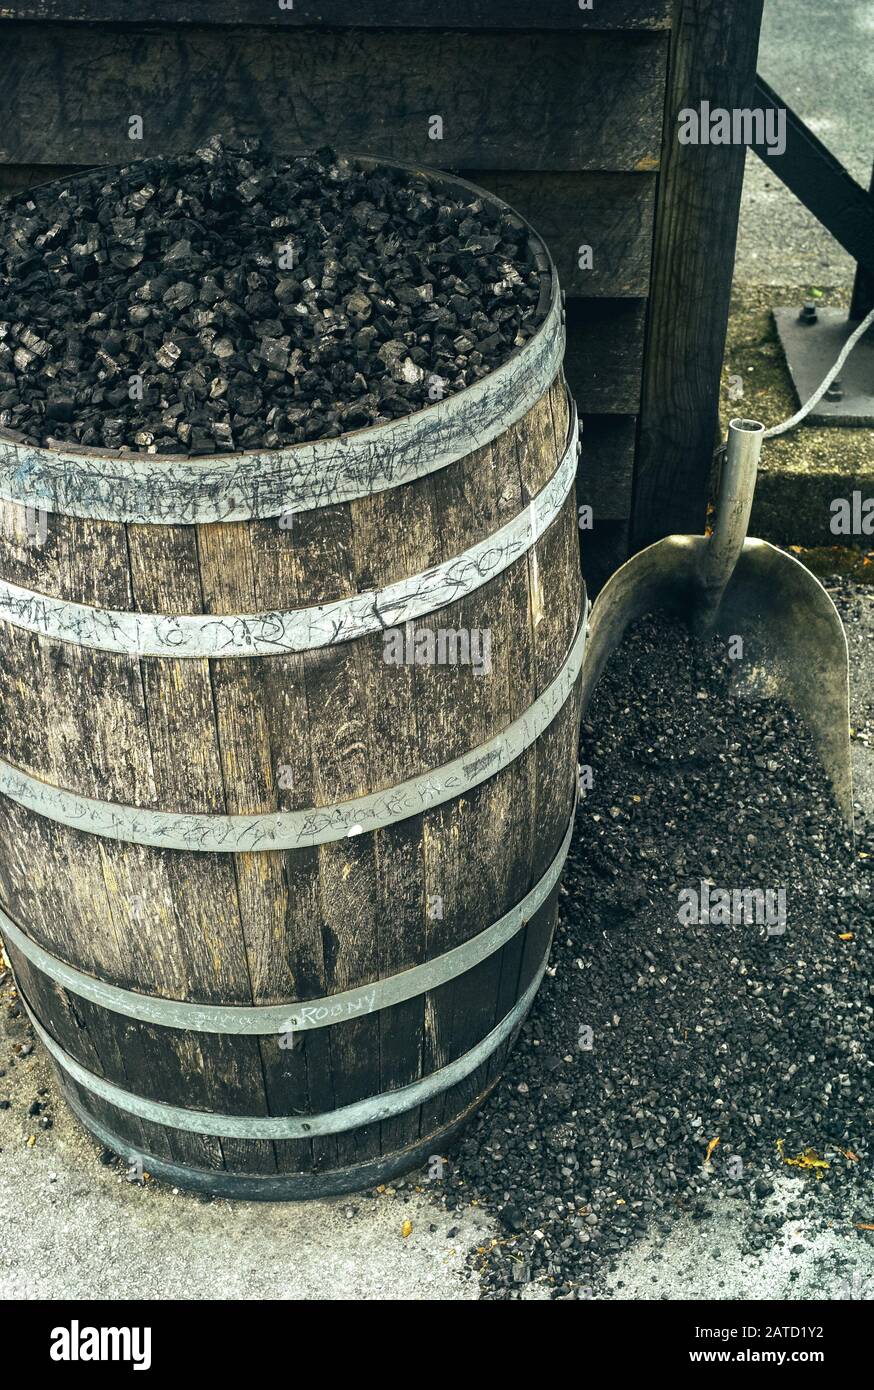 Carbone in un barile e uno Shovel, usato per L'Ingiallimento Tennessee Whiskey Per Filtrazione Foto Stock